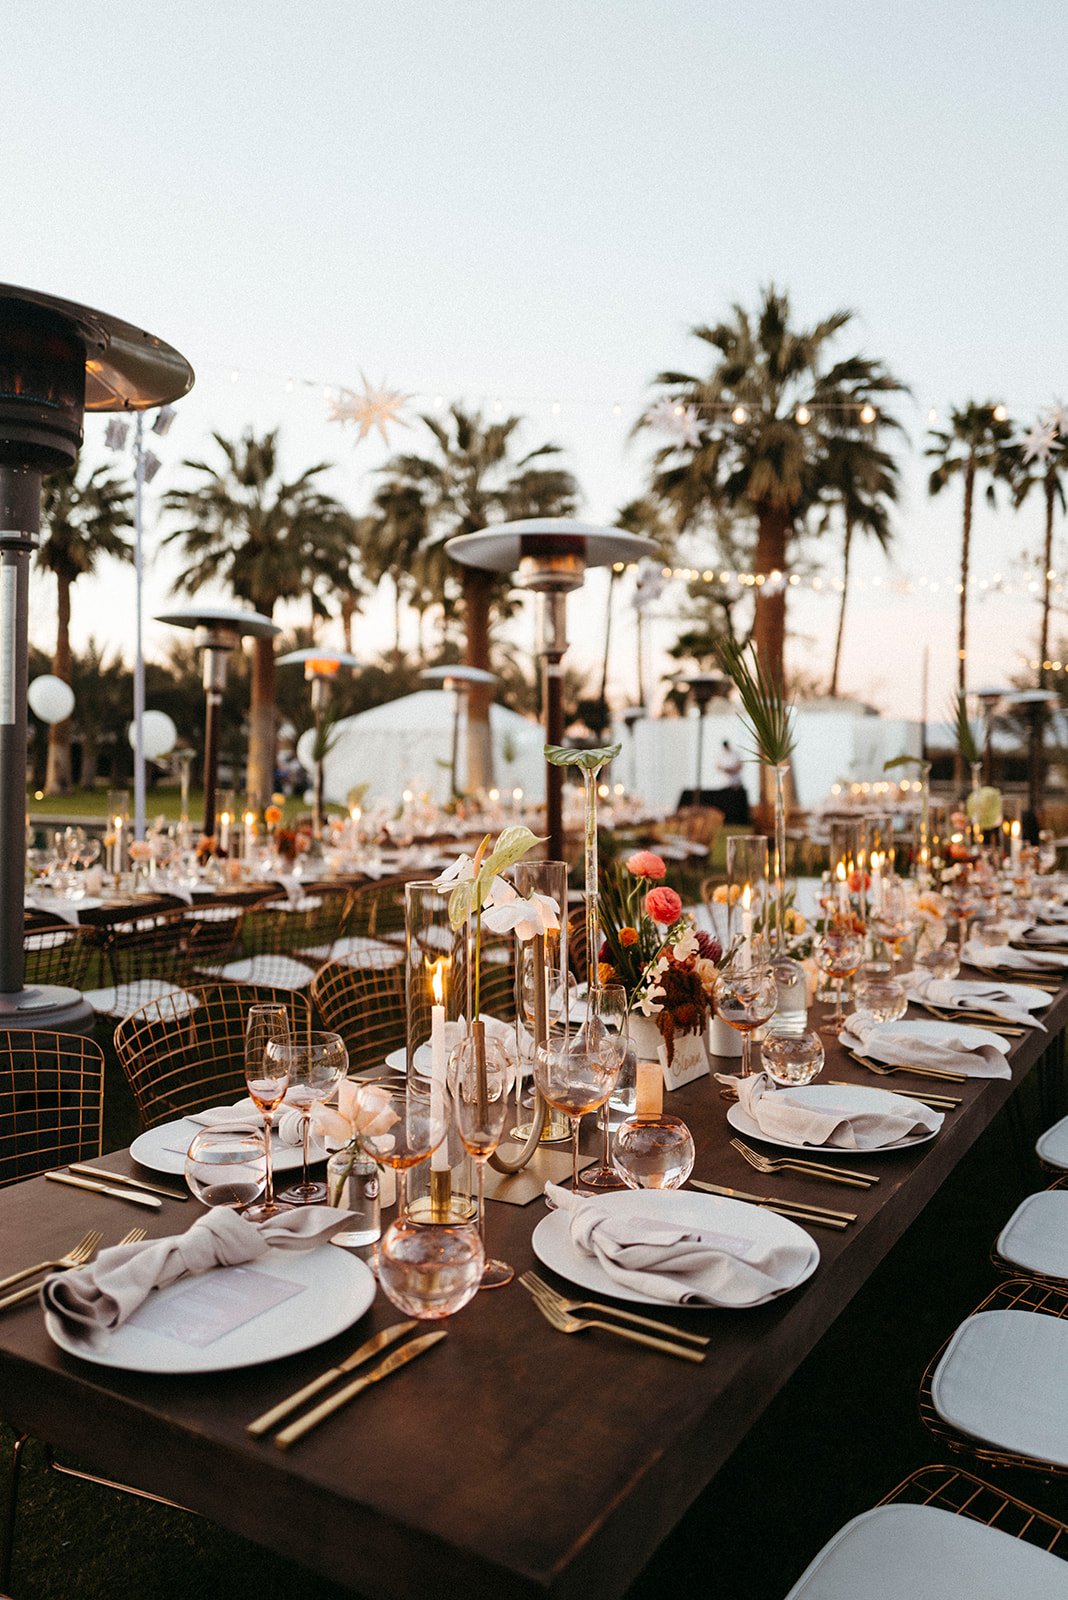  desert wedding table setting details palm springs 